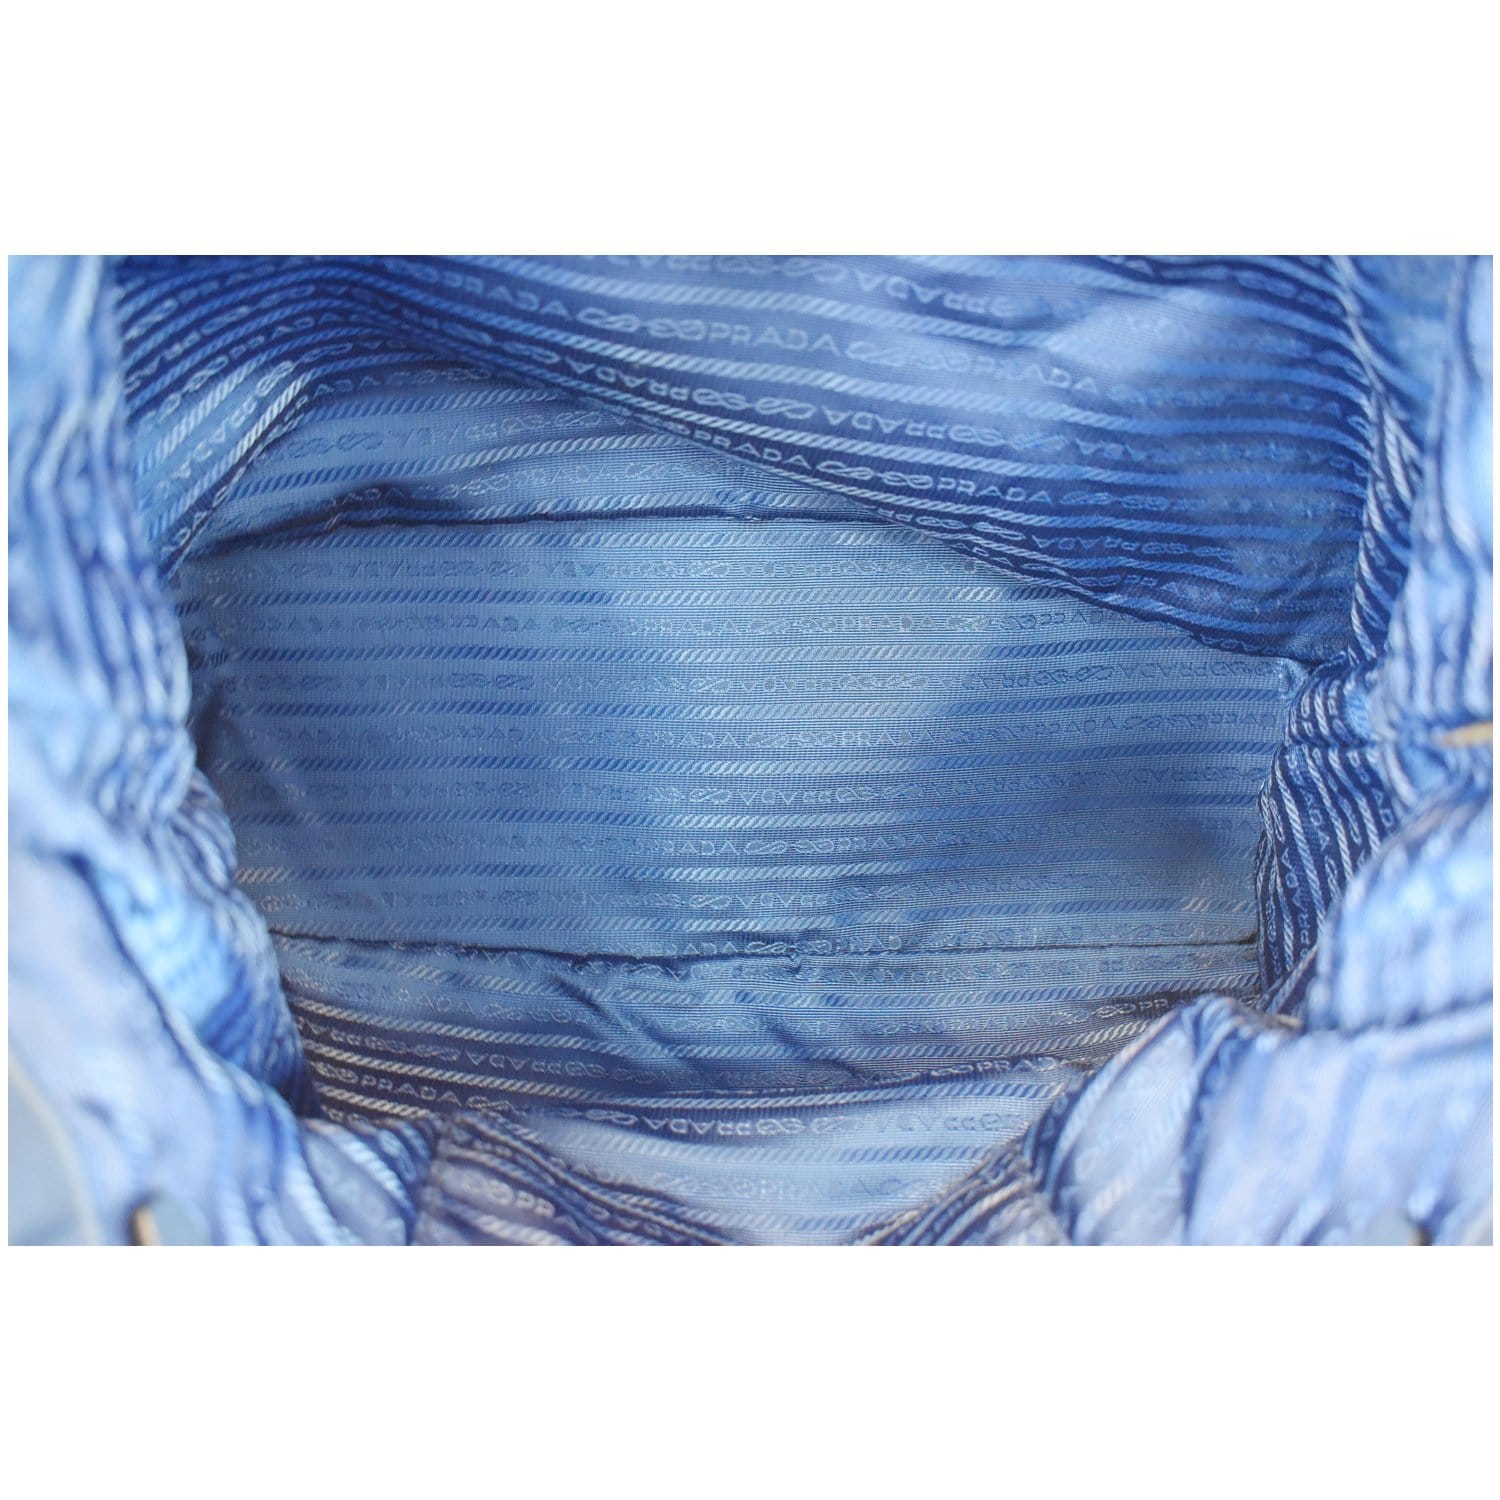 Prada Tessuto+Saffiano 2-Way bag Pervinca (light blue)